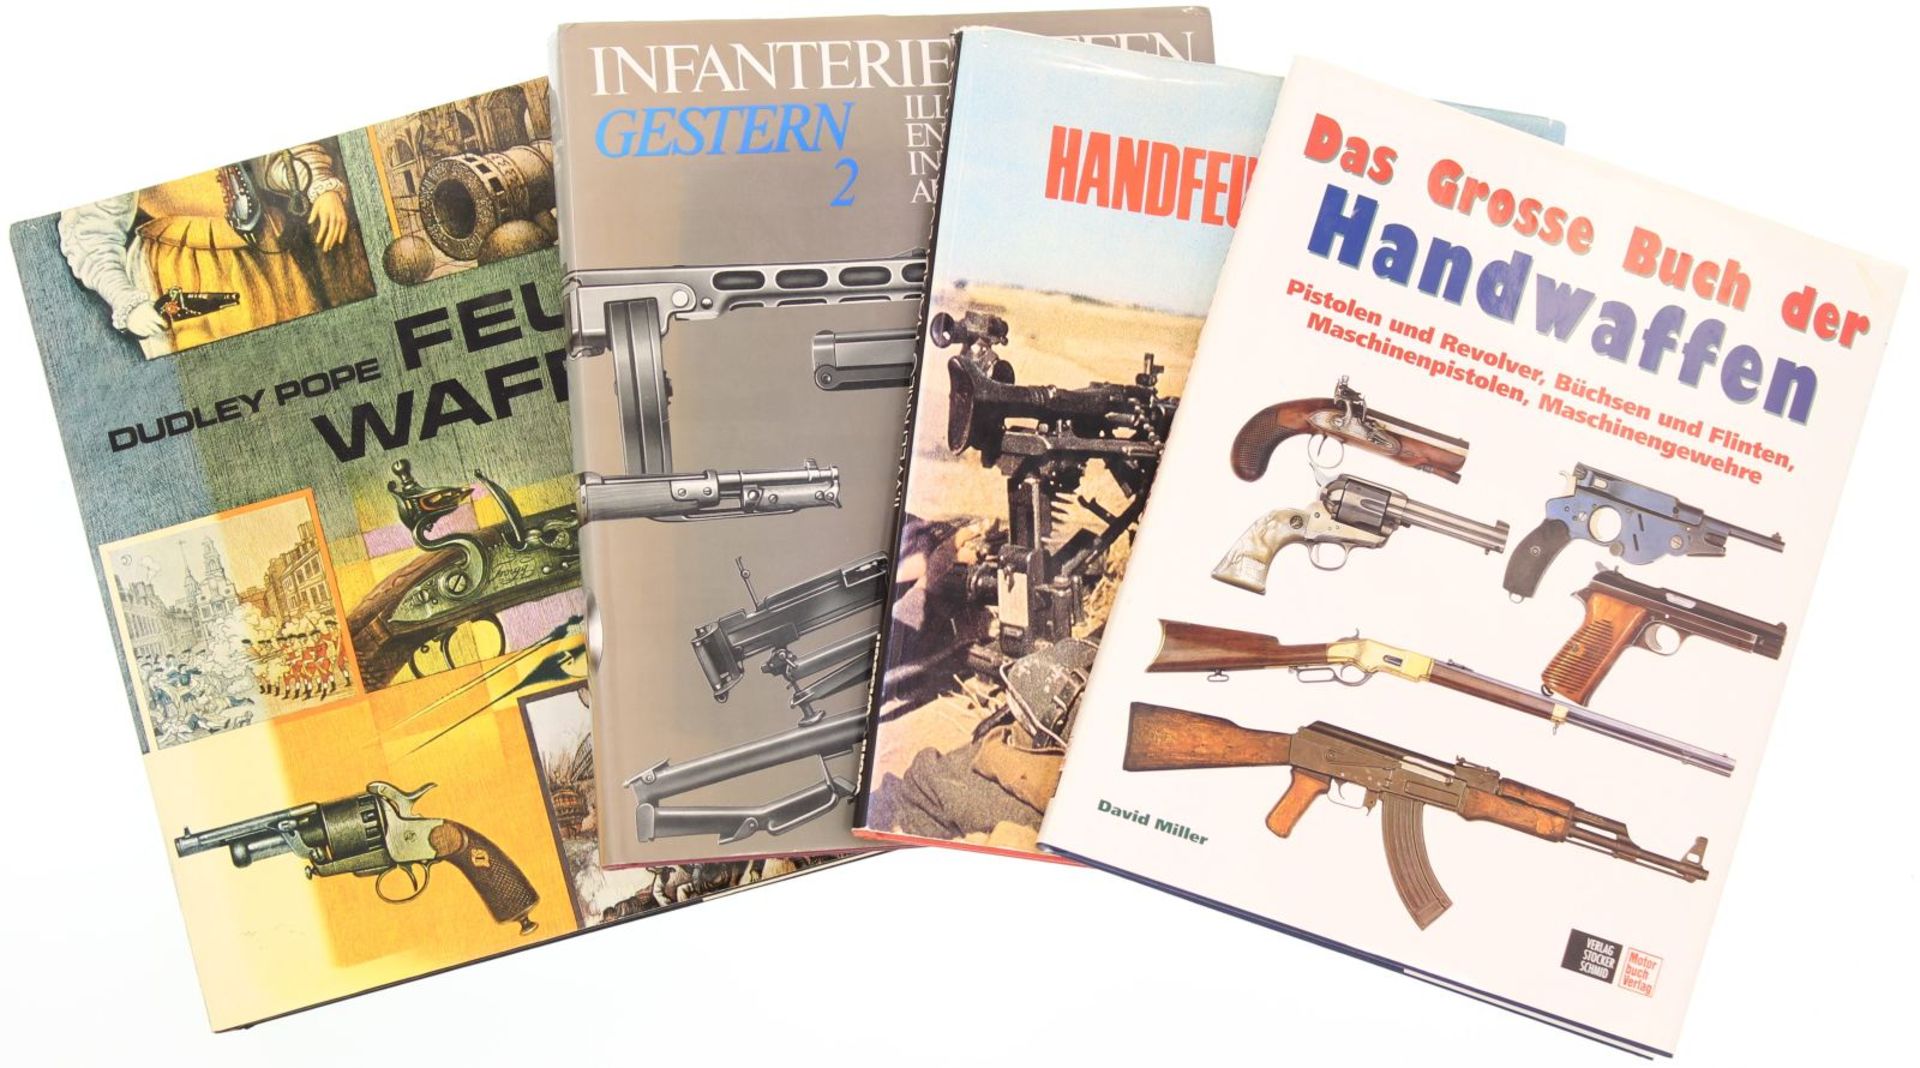 Konvolut von 4 Bildbänden: 1.Das grosse Buch der Handwaffen von David Miller. 2. Feuerwaffen von